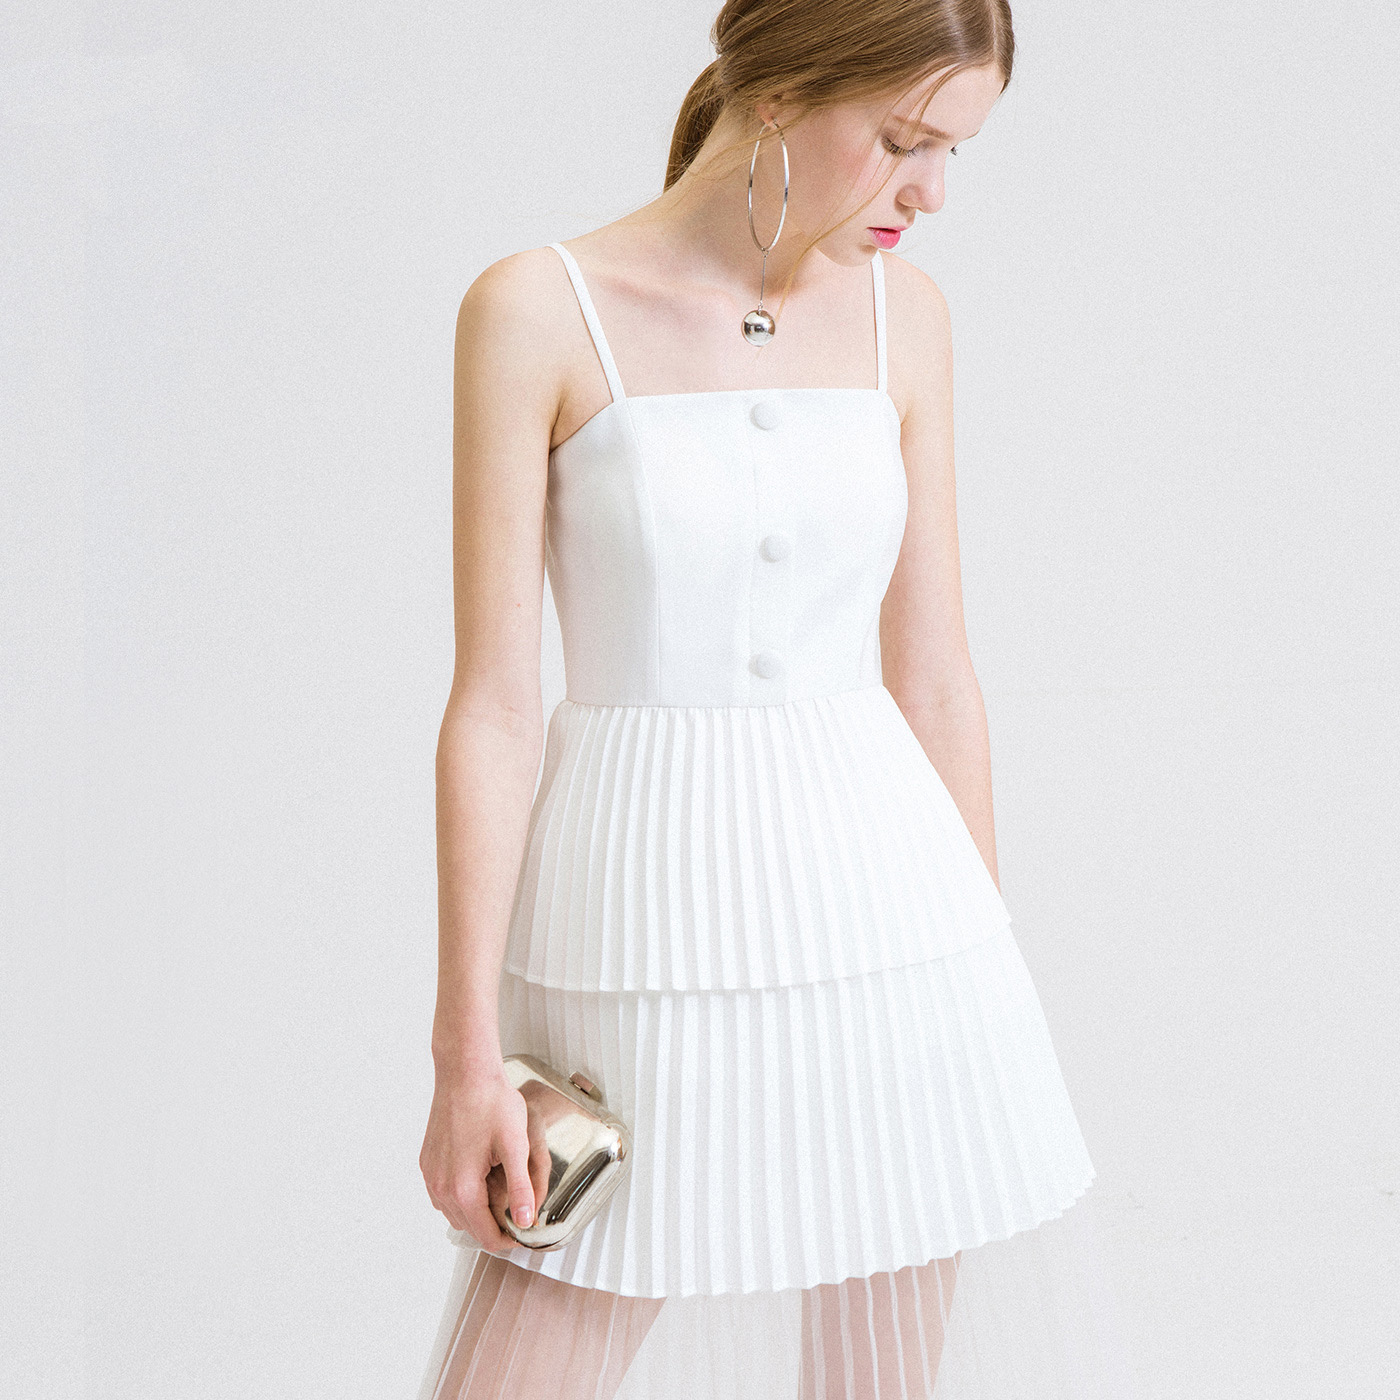 夏装新款女装加工 欧美简约白色吊带网纱连衣裙时尚显瘦露肩裙子